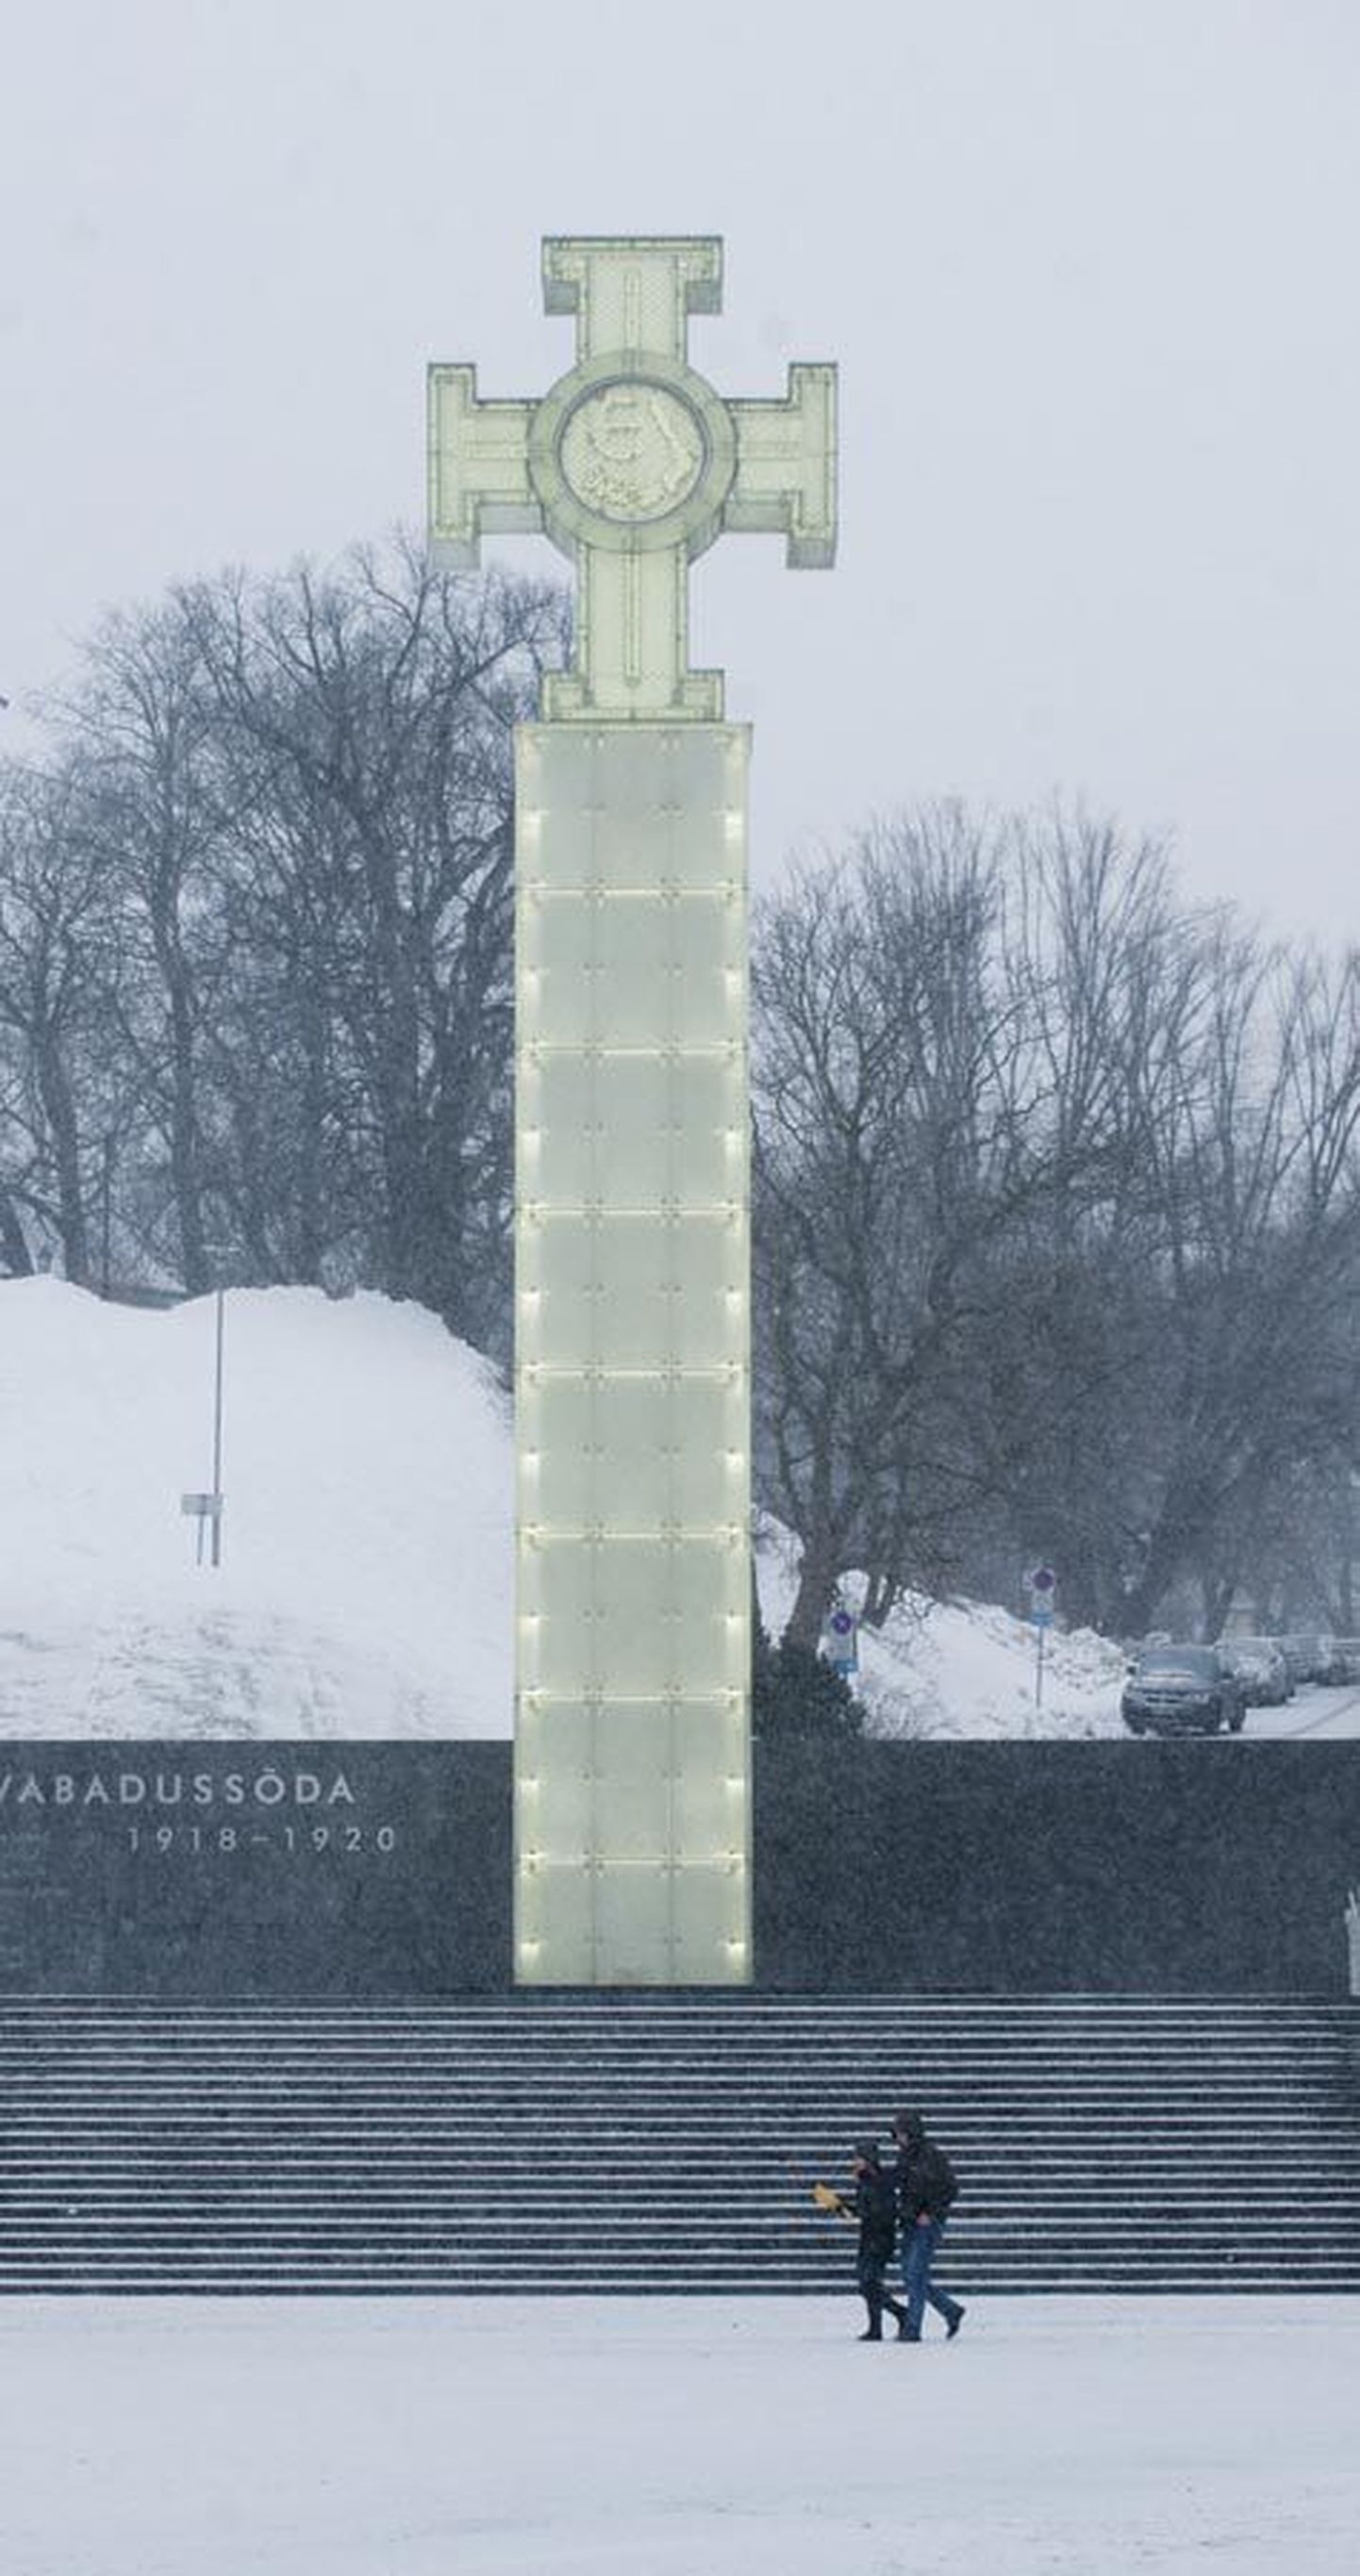 2009. aasta 23. juunil Tallinnas Vabaduse väljakul avatud Vabadussõja võidusambal on paneelid värvi vahetanud, selle valgustus on kustunud ning kord kukkus samba nurgapaneel alla ja rikkus alusplaati. Siiski on see tähtsaim mälestusmärk, mis on pärast iseseisvuse taastamist püstitatud Eesti riikluse eest võidelnuile.